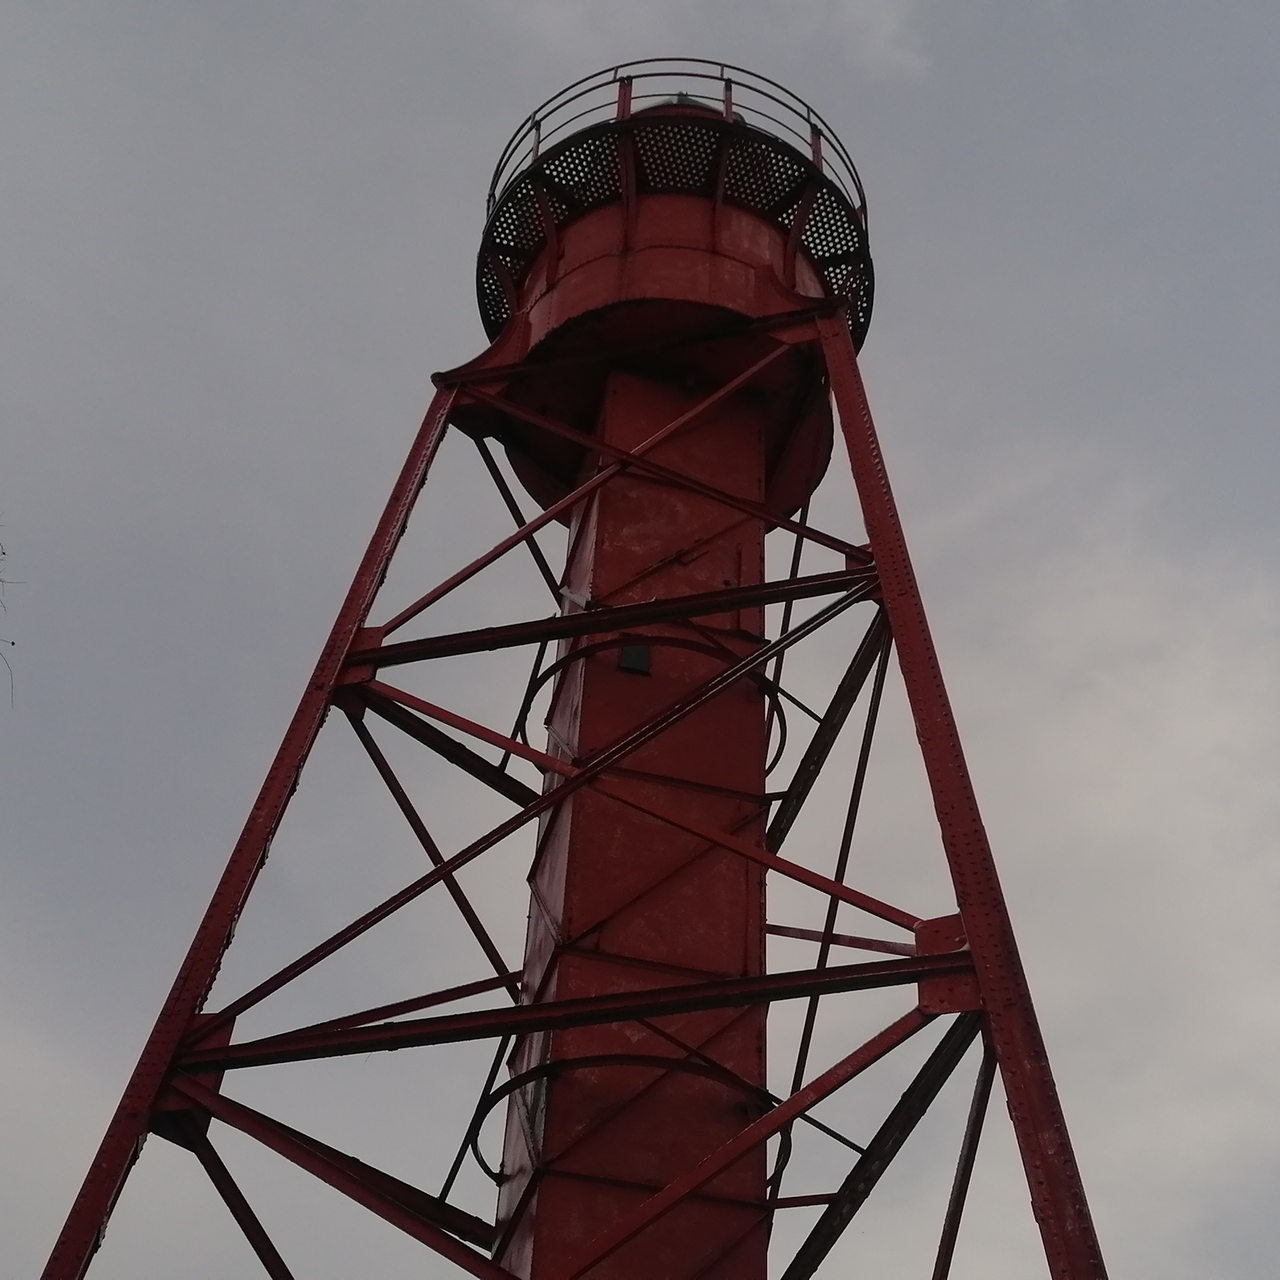 Ein alter roter Leuchturm steht in einer verschneiten Landschaft